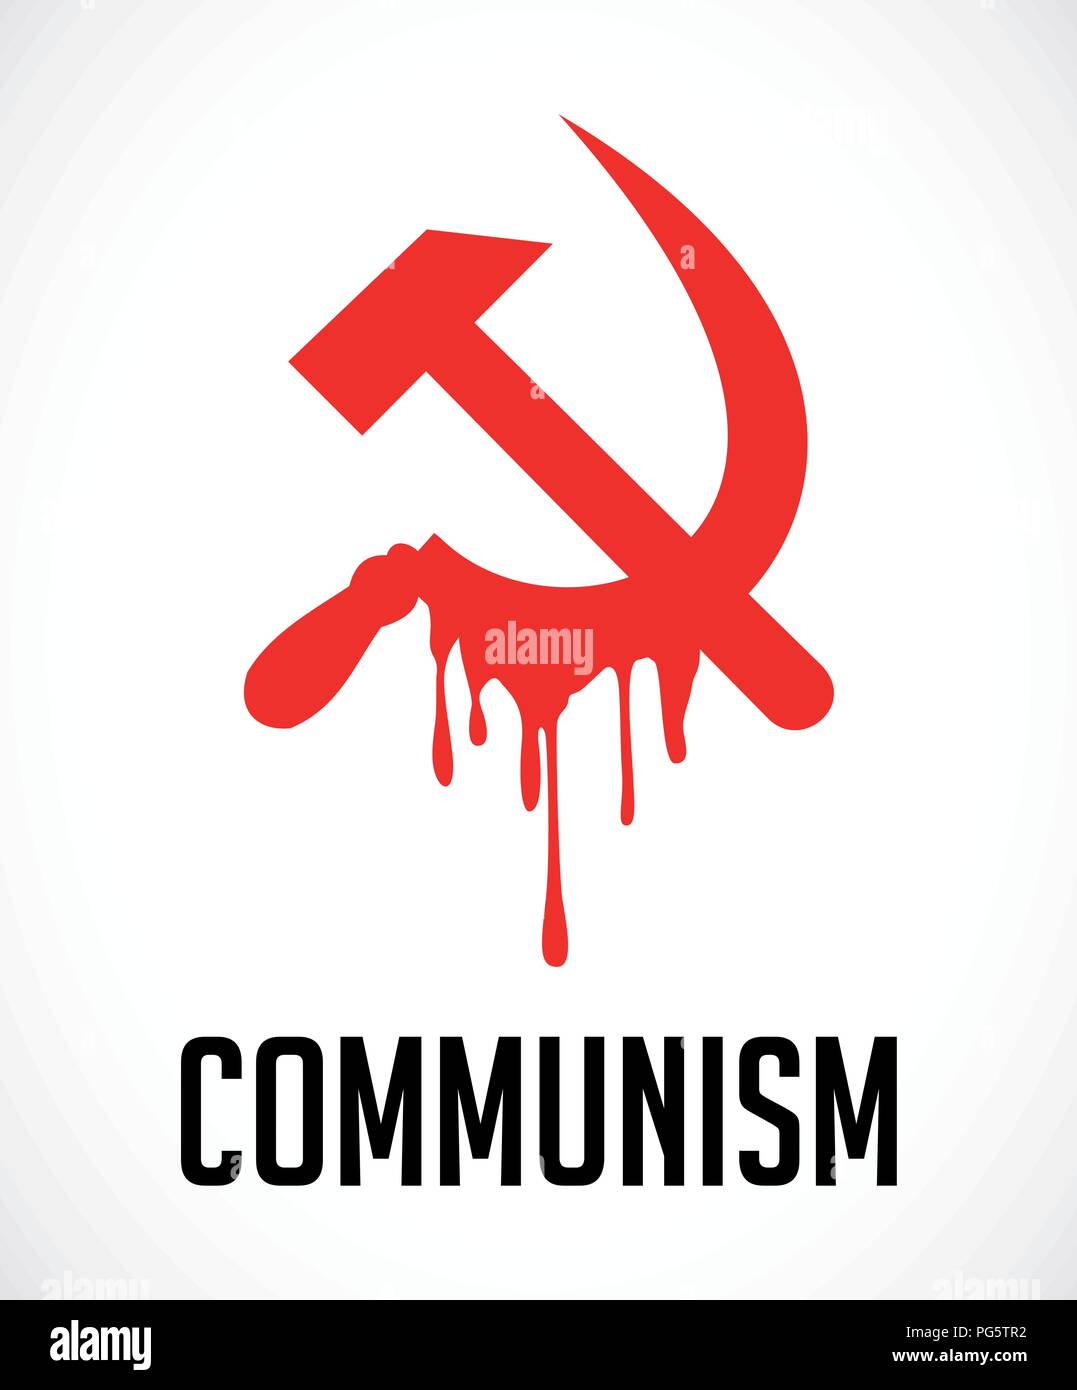 Kommunismus - mörderischen politischen System Stock Vektor